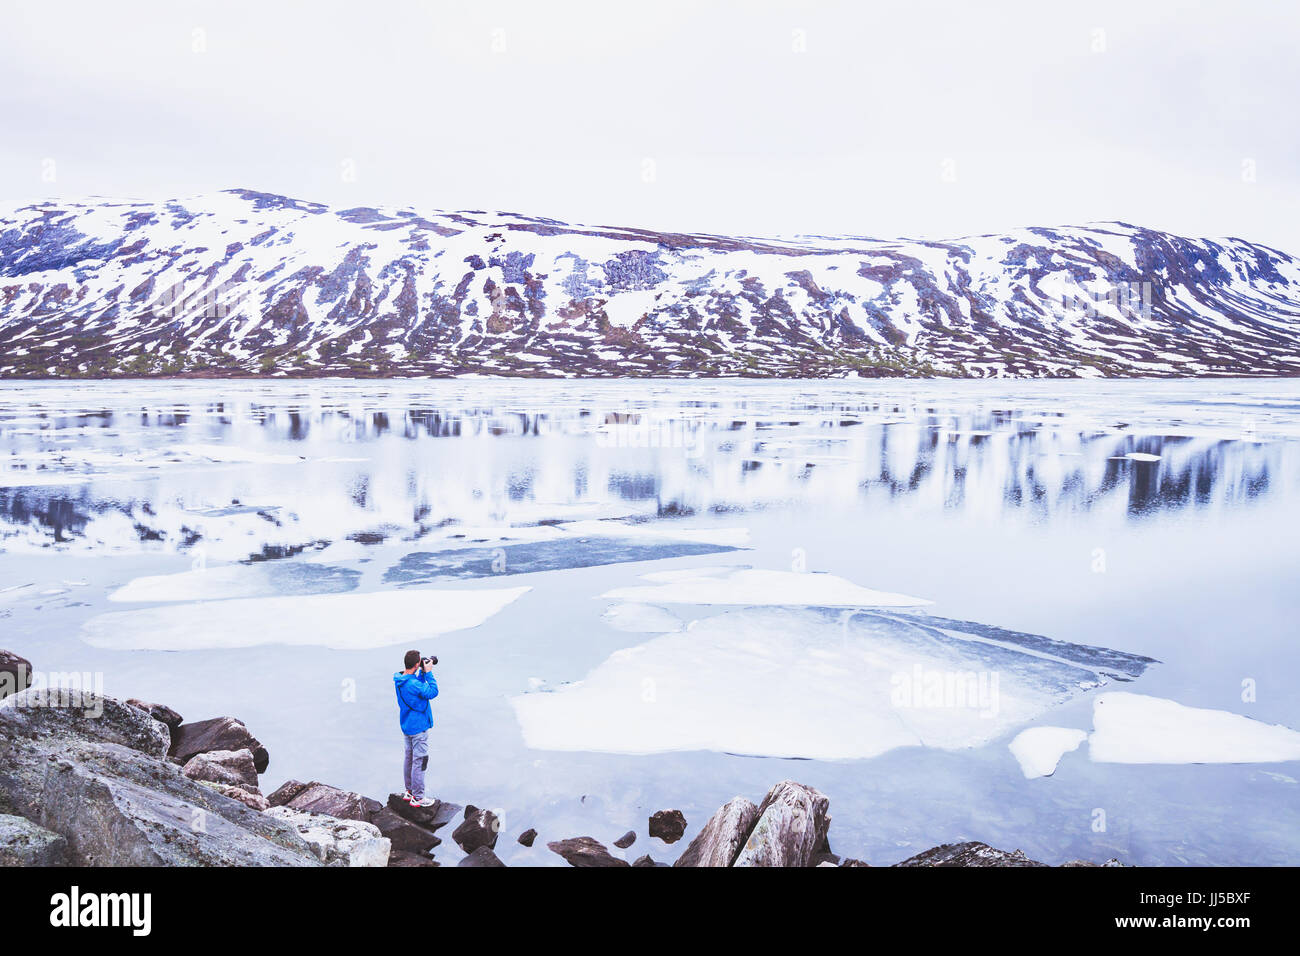 Photographe de voyage photo de paysage de neige en Norvège au printemps, personne près de beau lac gelé dans les montagnes Banque D'Images